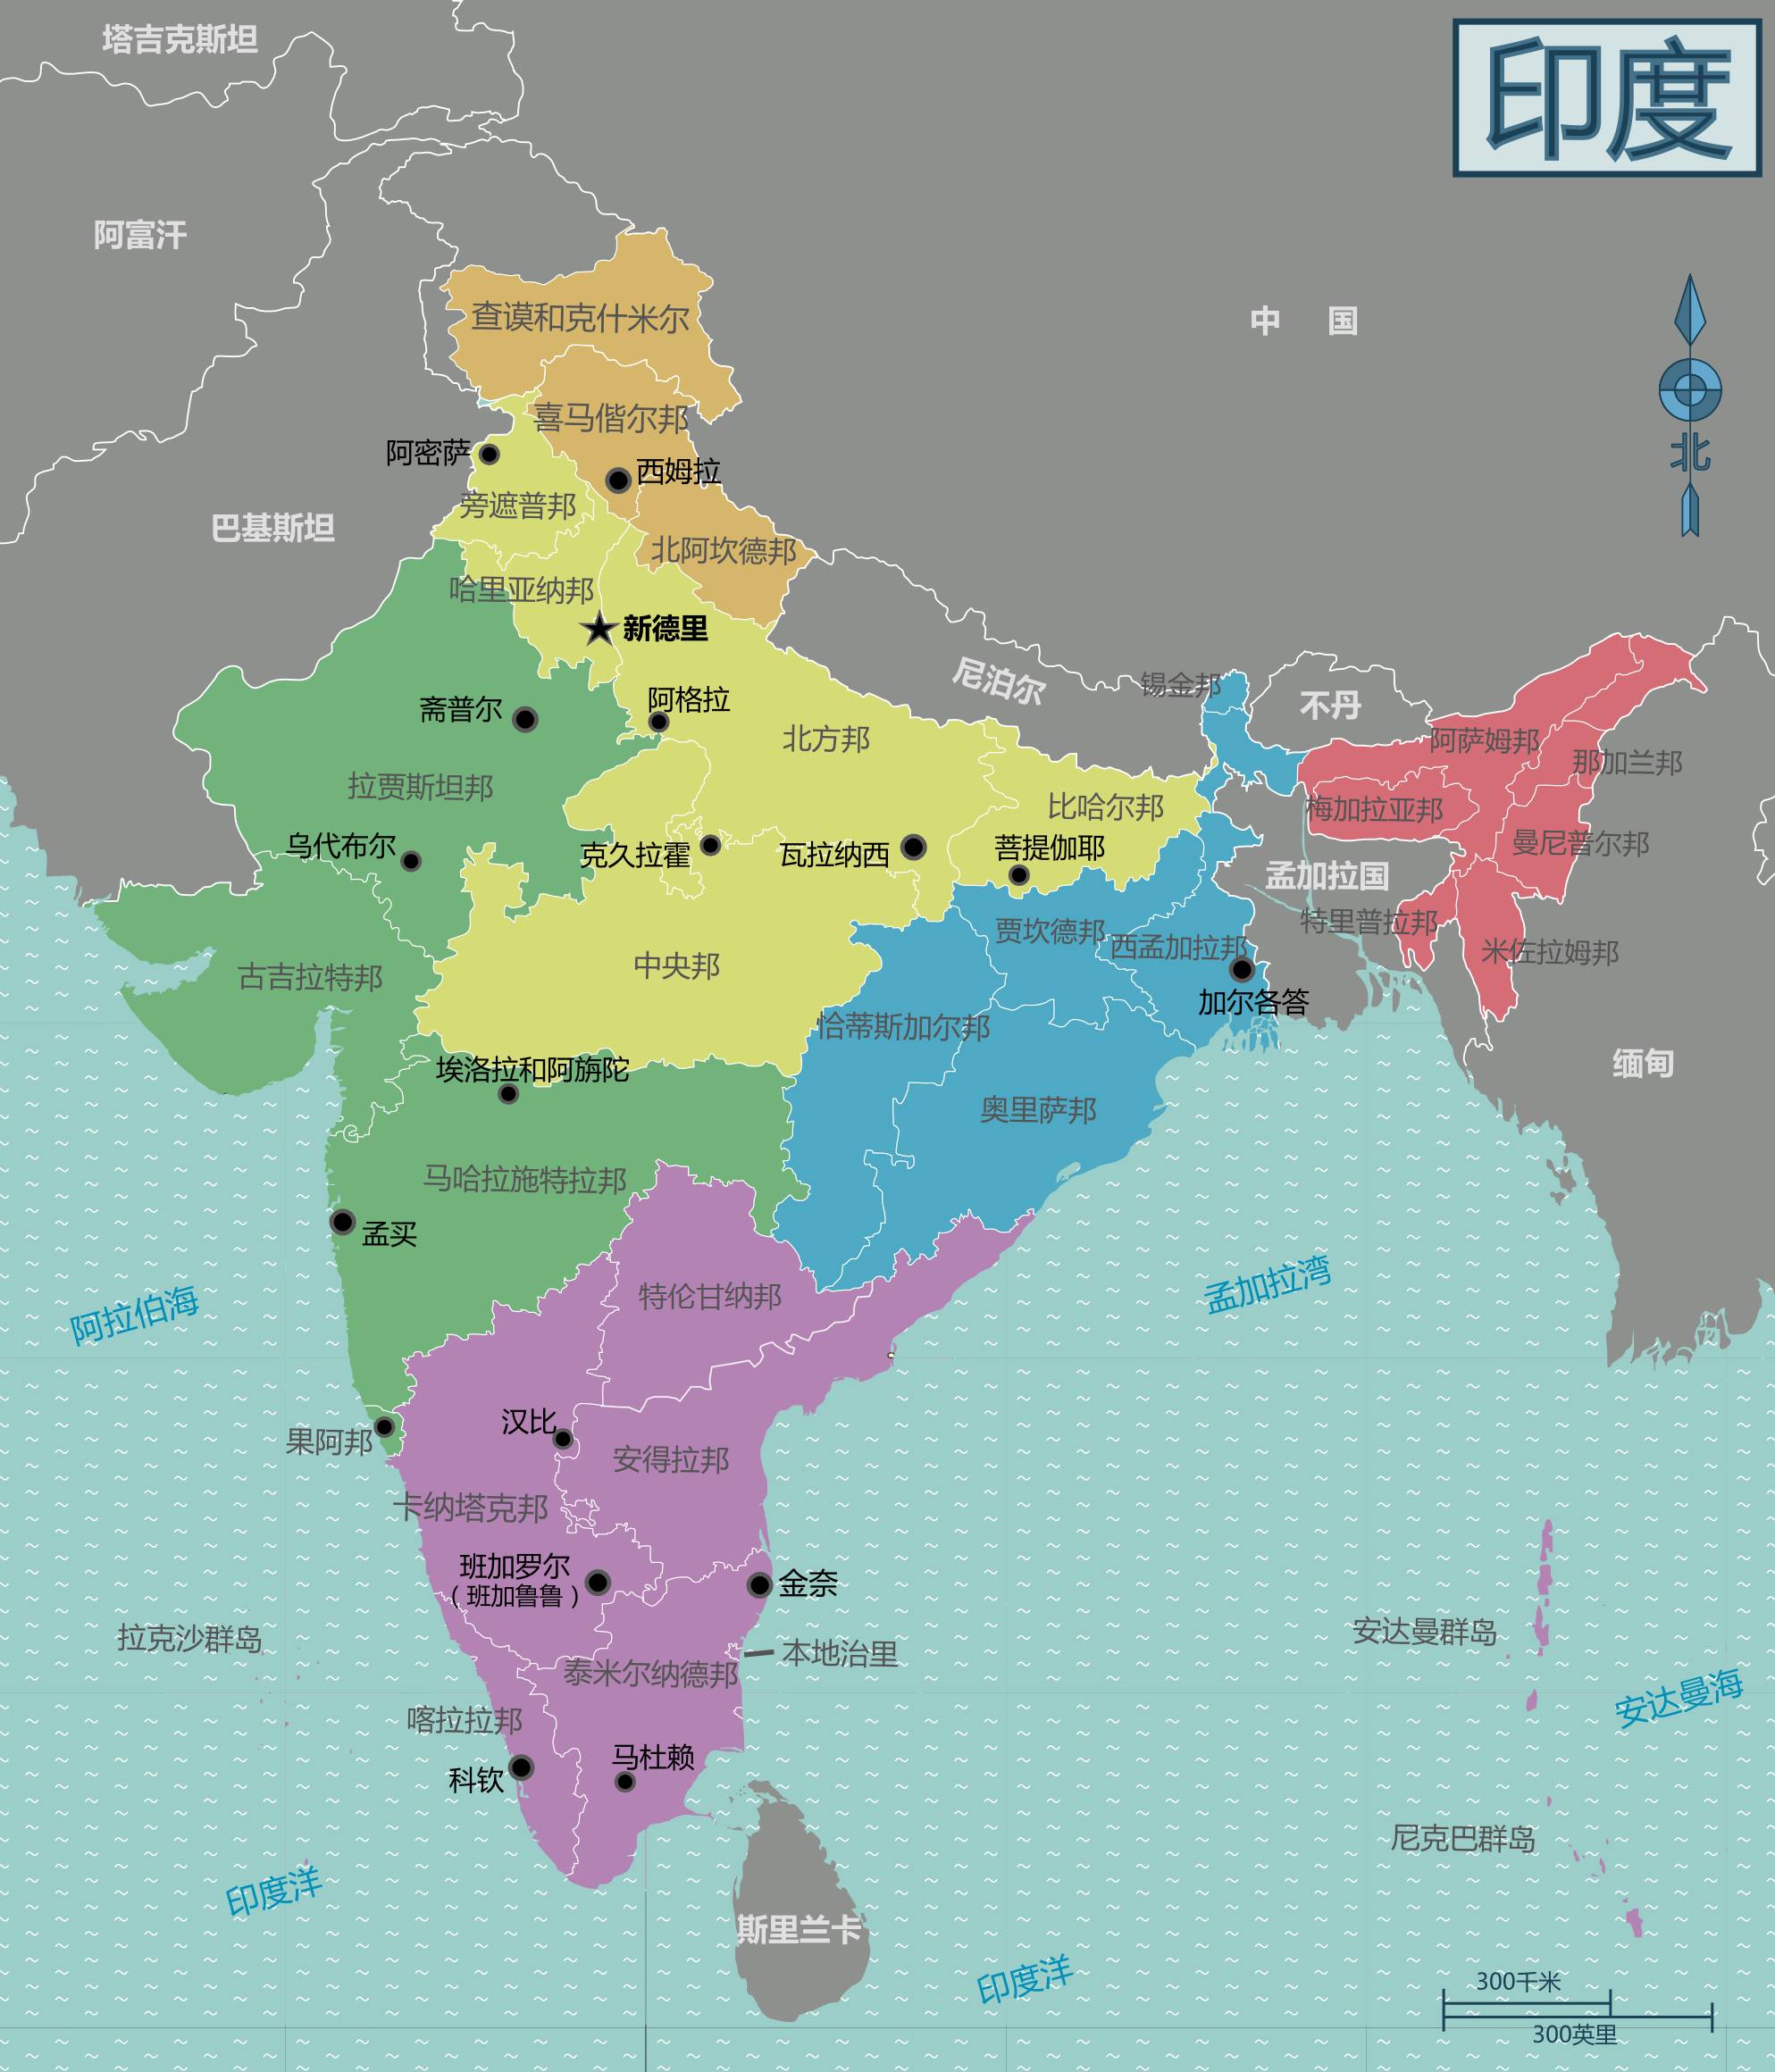 今天印度的国土范围  正是当年欧洲入侵者的政治遗产之一  (印度行政